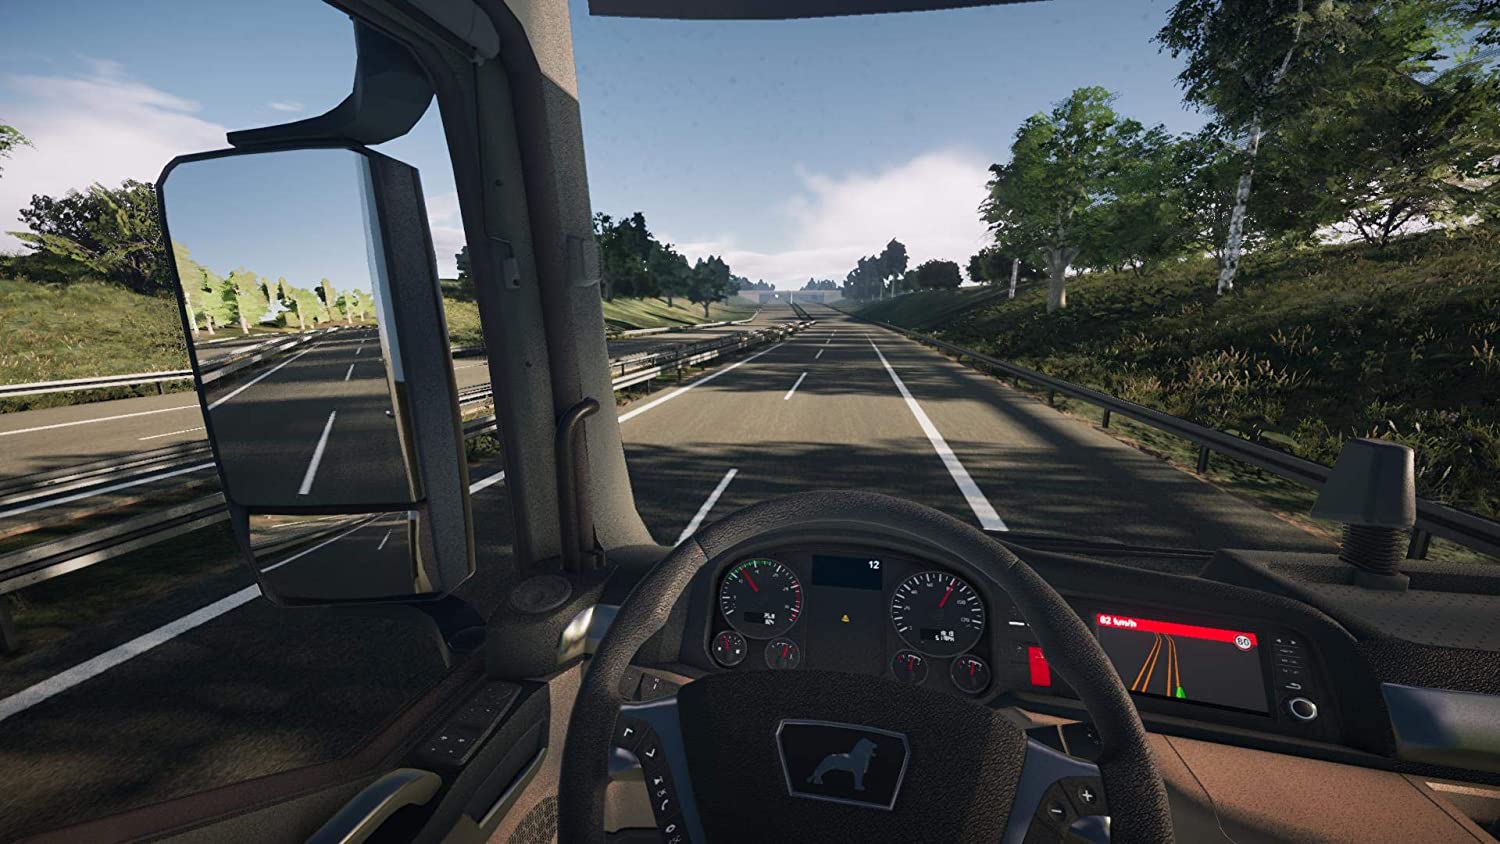 Играть симулятор новое. On the Road – Truck Simulation игра. Truck Simulator ps4. On the Road Truck Simulator для PLAYSTATION 4. Евро трак симулятор на ПС 4.